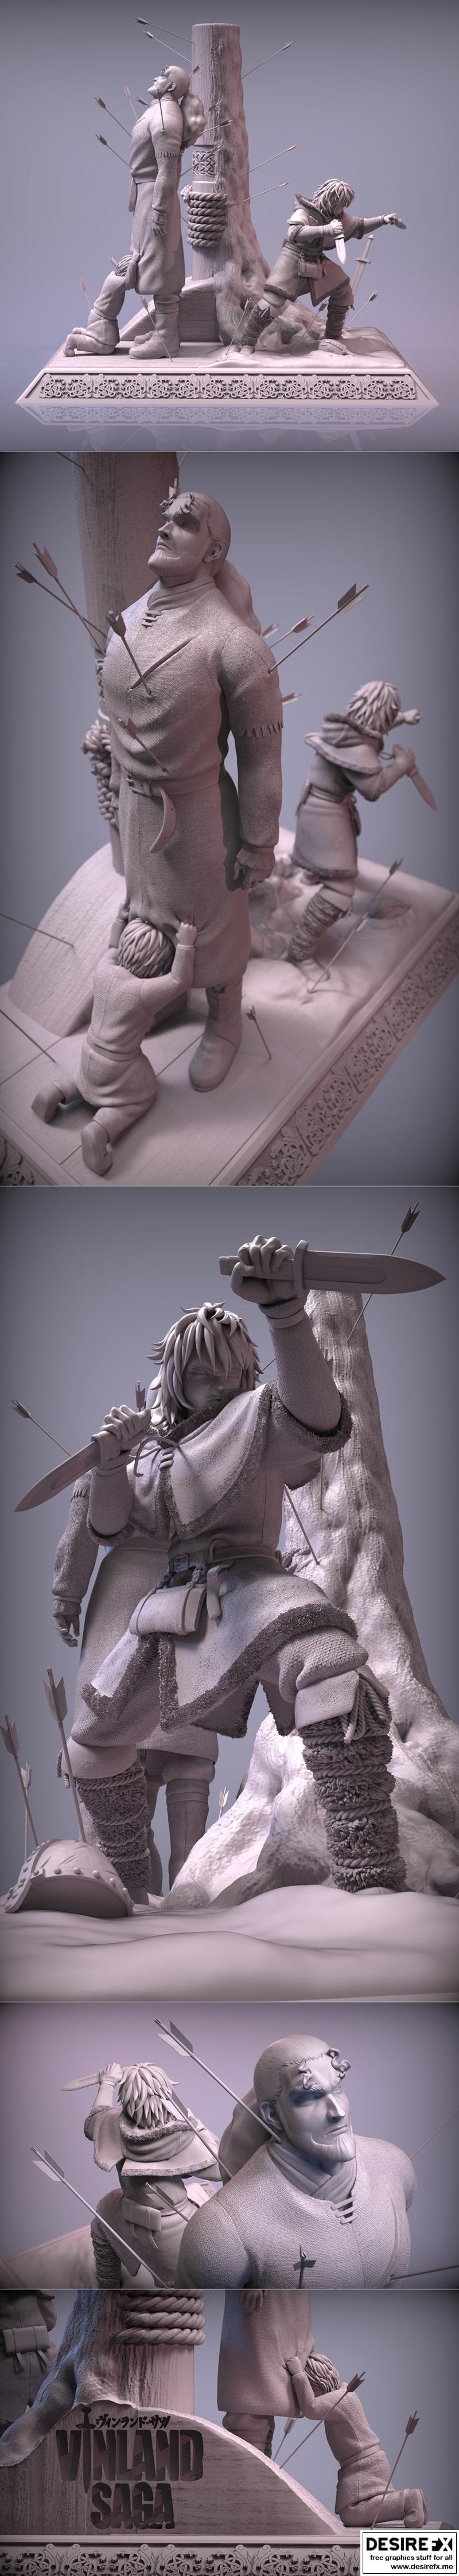 Desire FX 3d models | Death of Thors Viland saga fan art – 3D Print ...